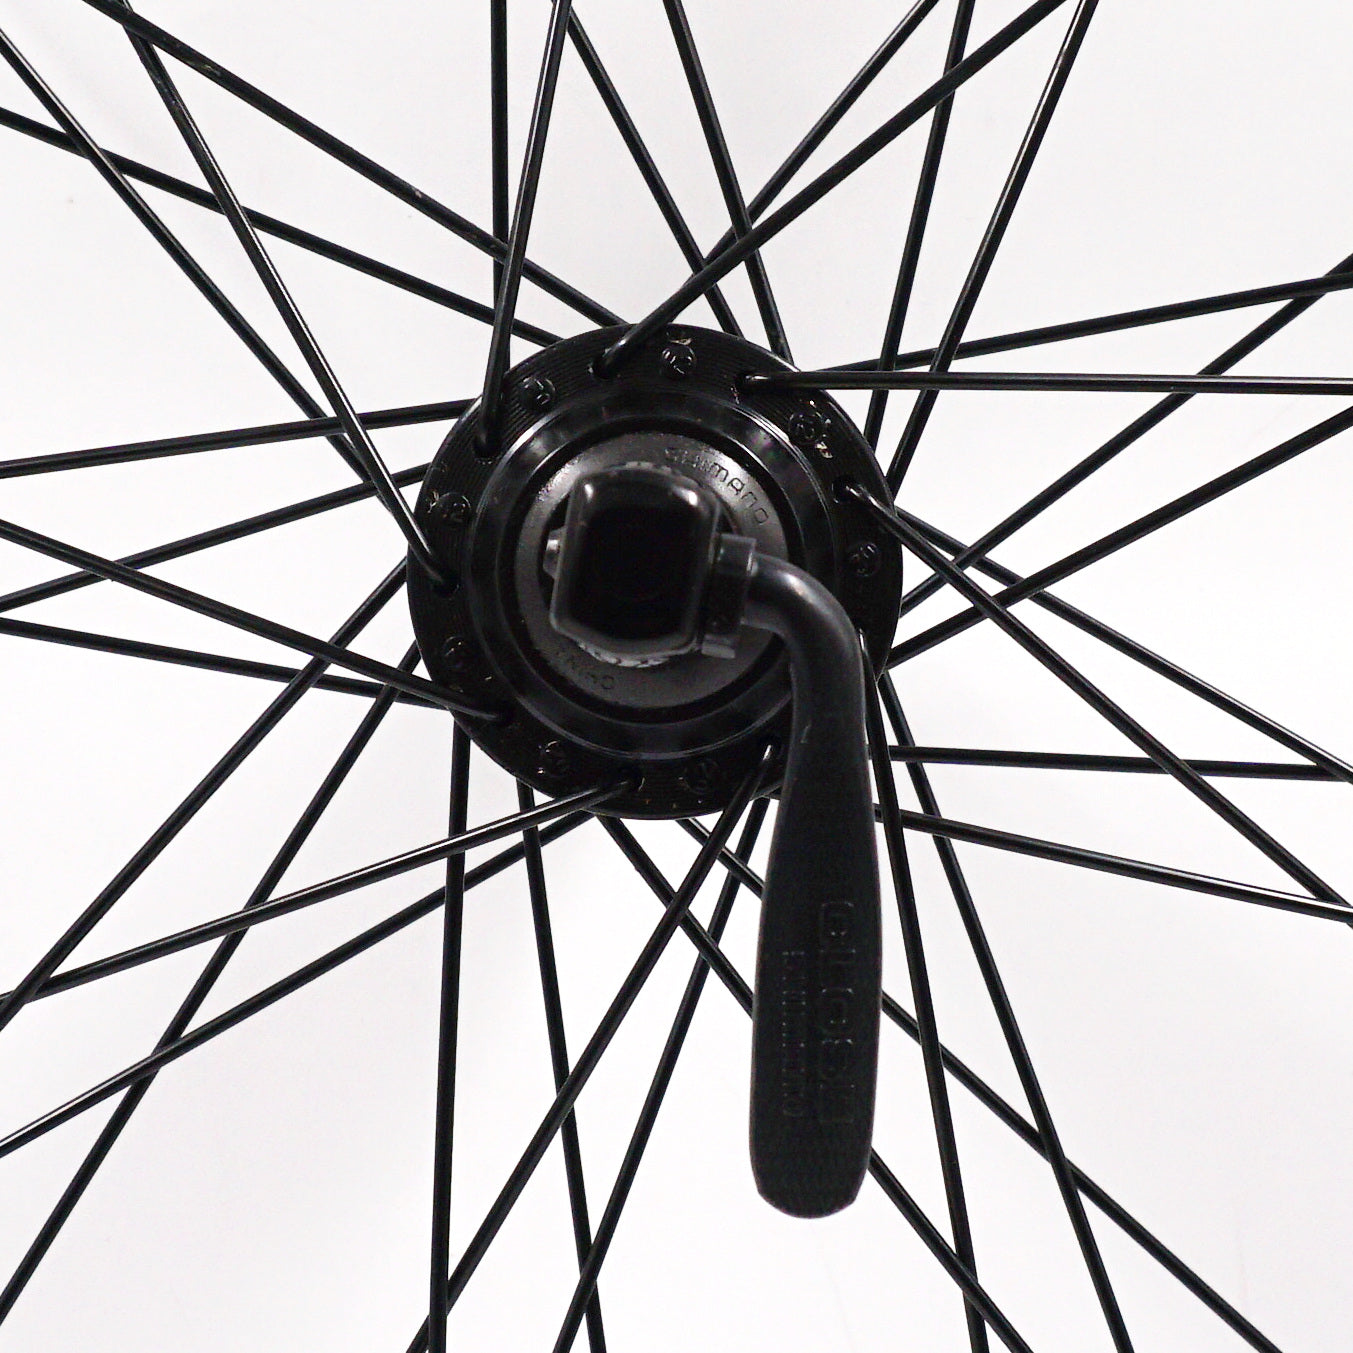 Weinmann 519 26-inch Black Cassette type Mountain Bike Wheelset